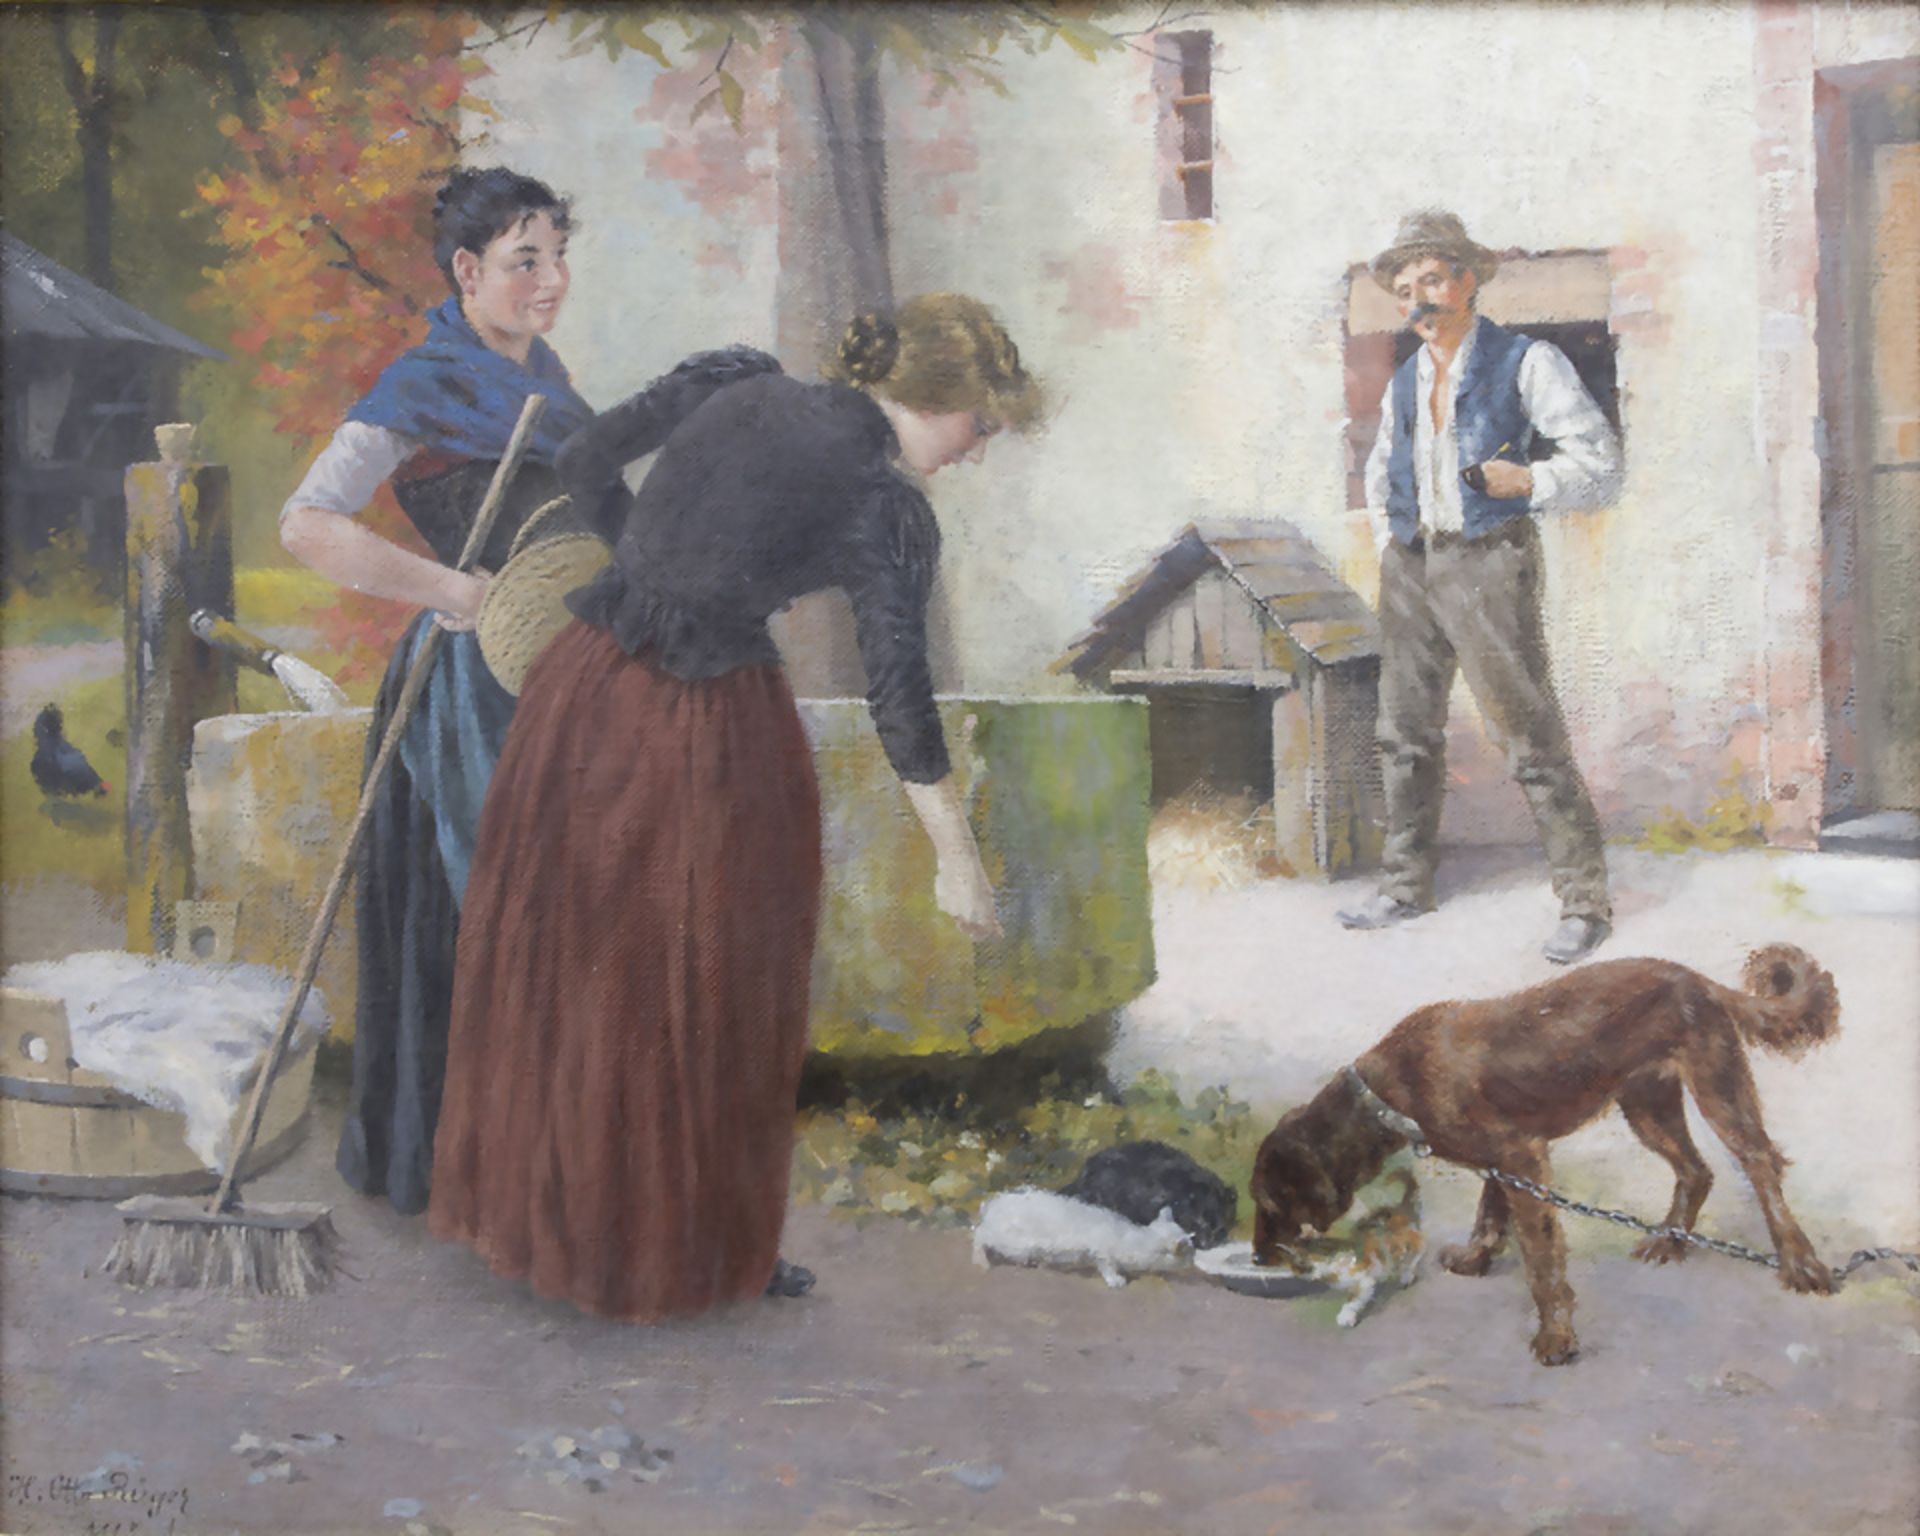 H. Otto Rüger (19./20. Jh.), 'Fütterung von Katzen und Hund' / 'The feed of cats and a dog'